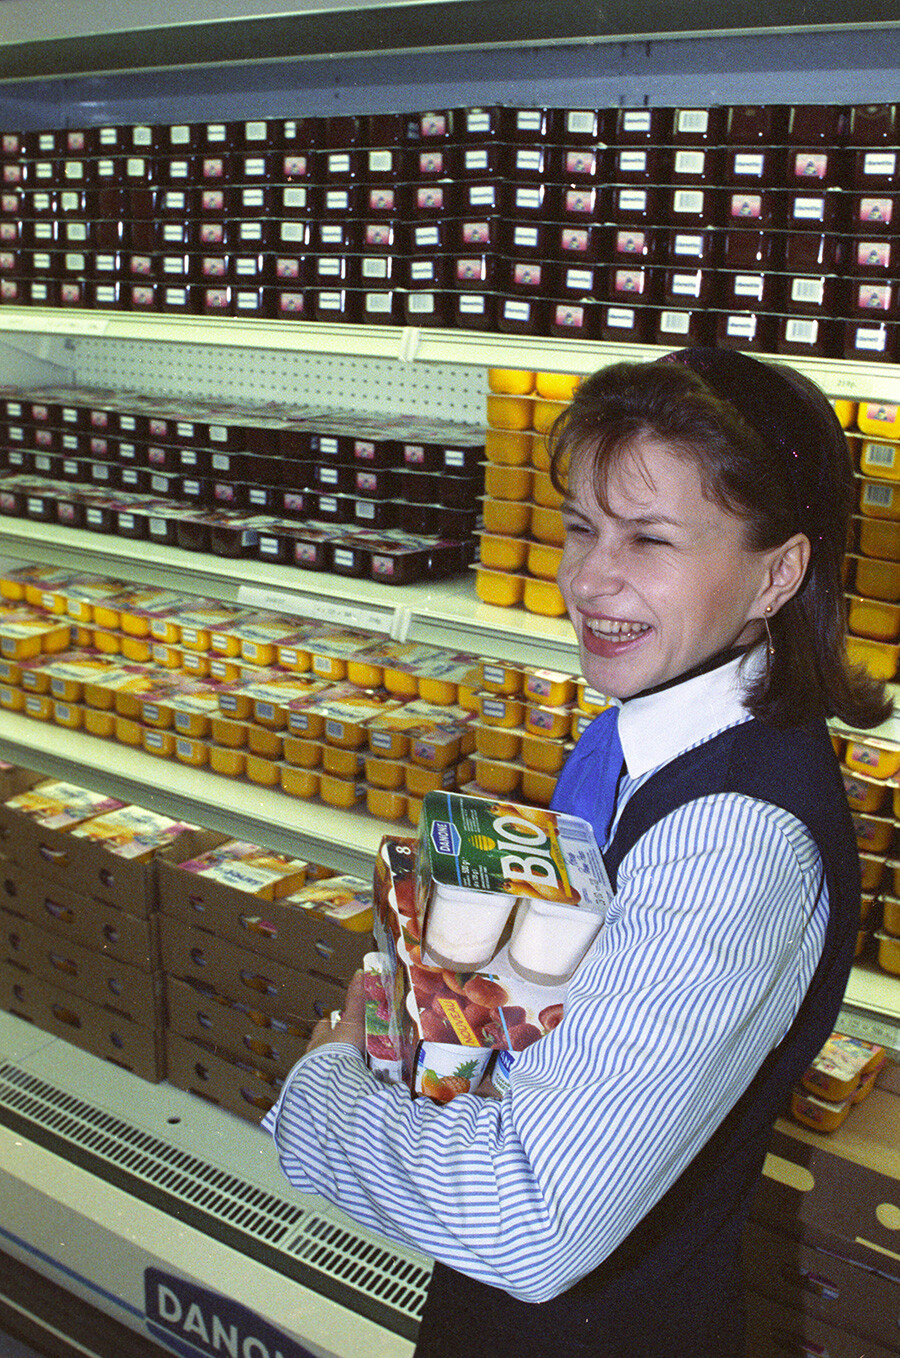 モスクワ中心部で最初のスーパーマーケットがオープンし、ダノン社の乳製品が販売された。人々は海外製ヨーグルトを求めて列をなした。